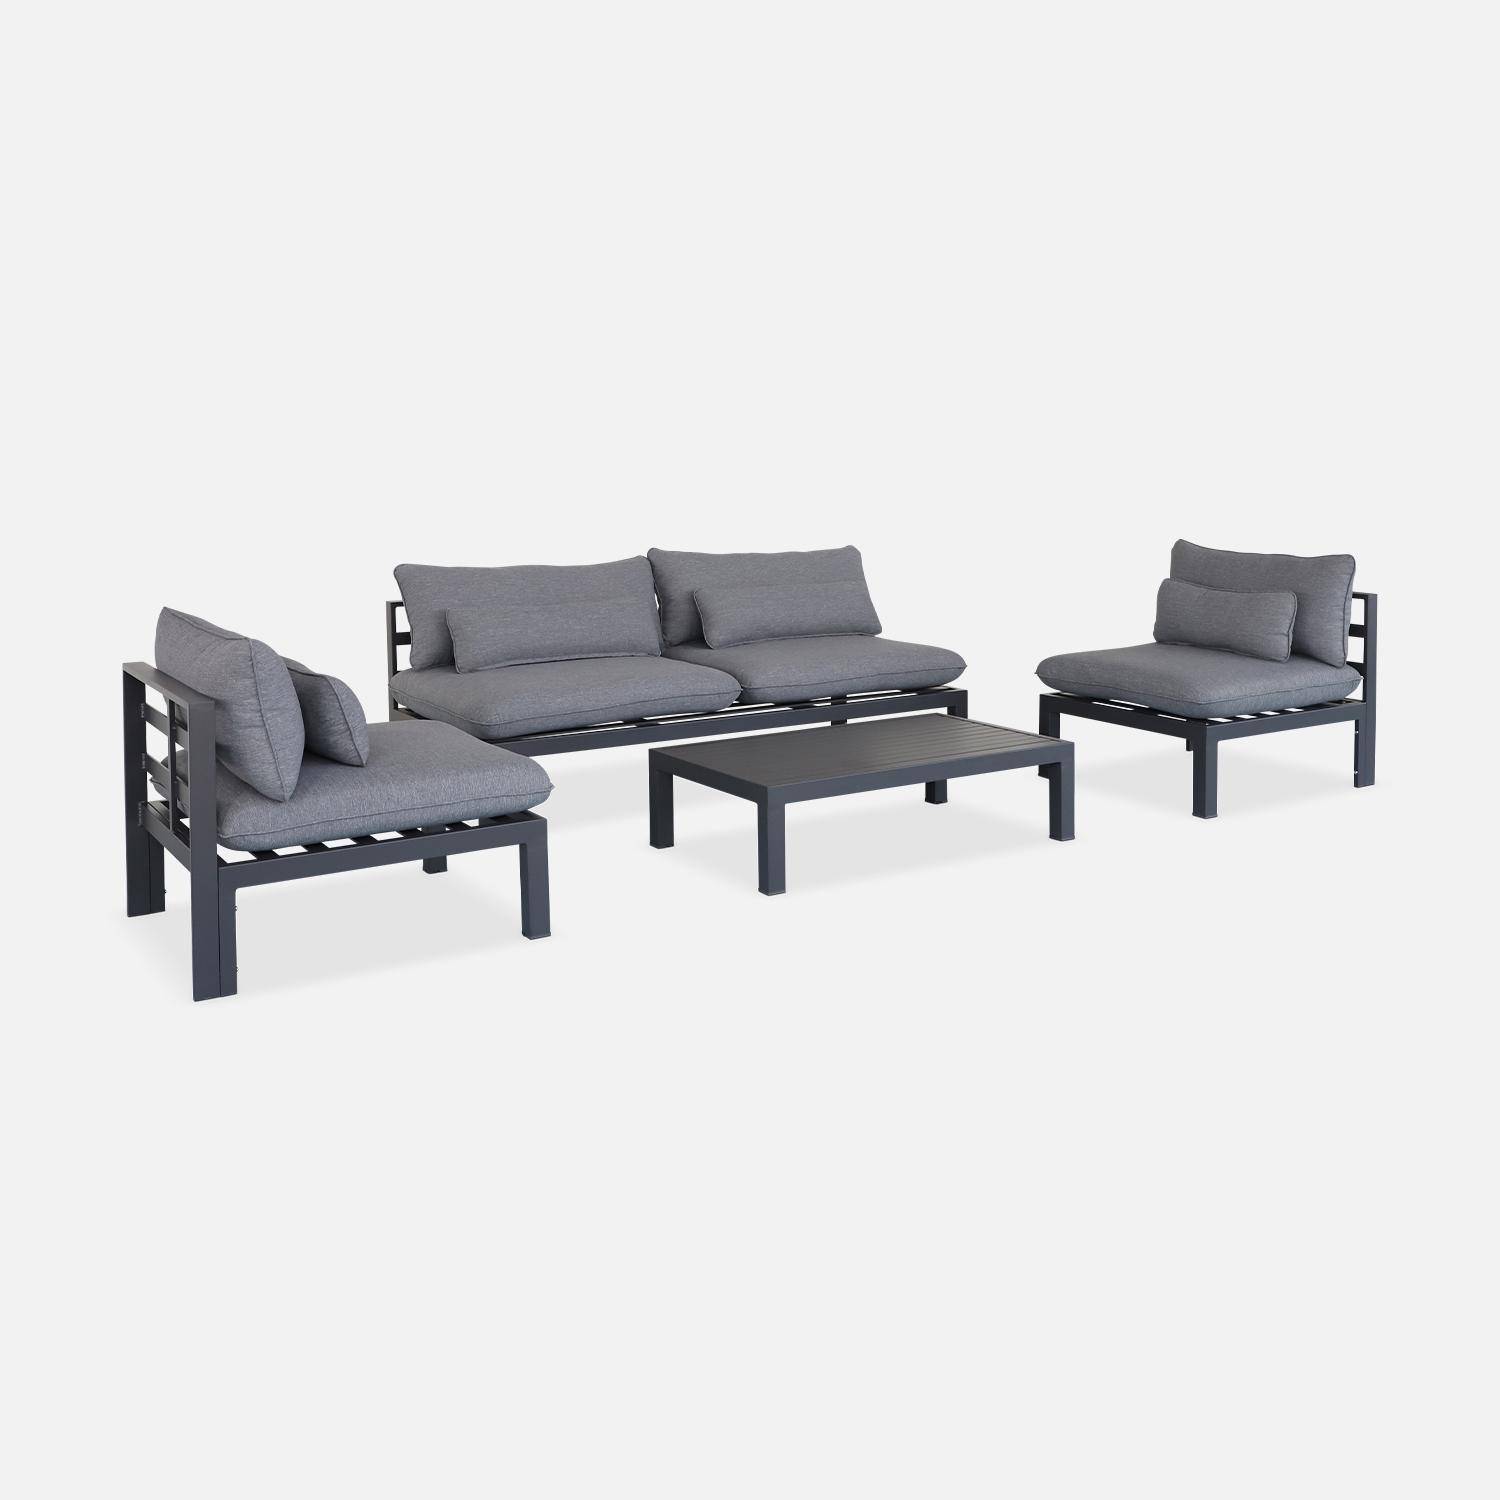 Conjunto de muebles de jardín de aluminio 4 plazas - asientos profundos - Rieti - gris antracita,sweeek,Photo4